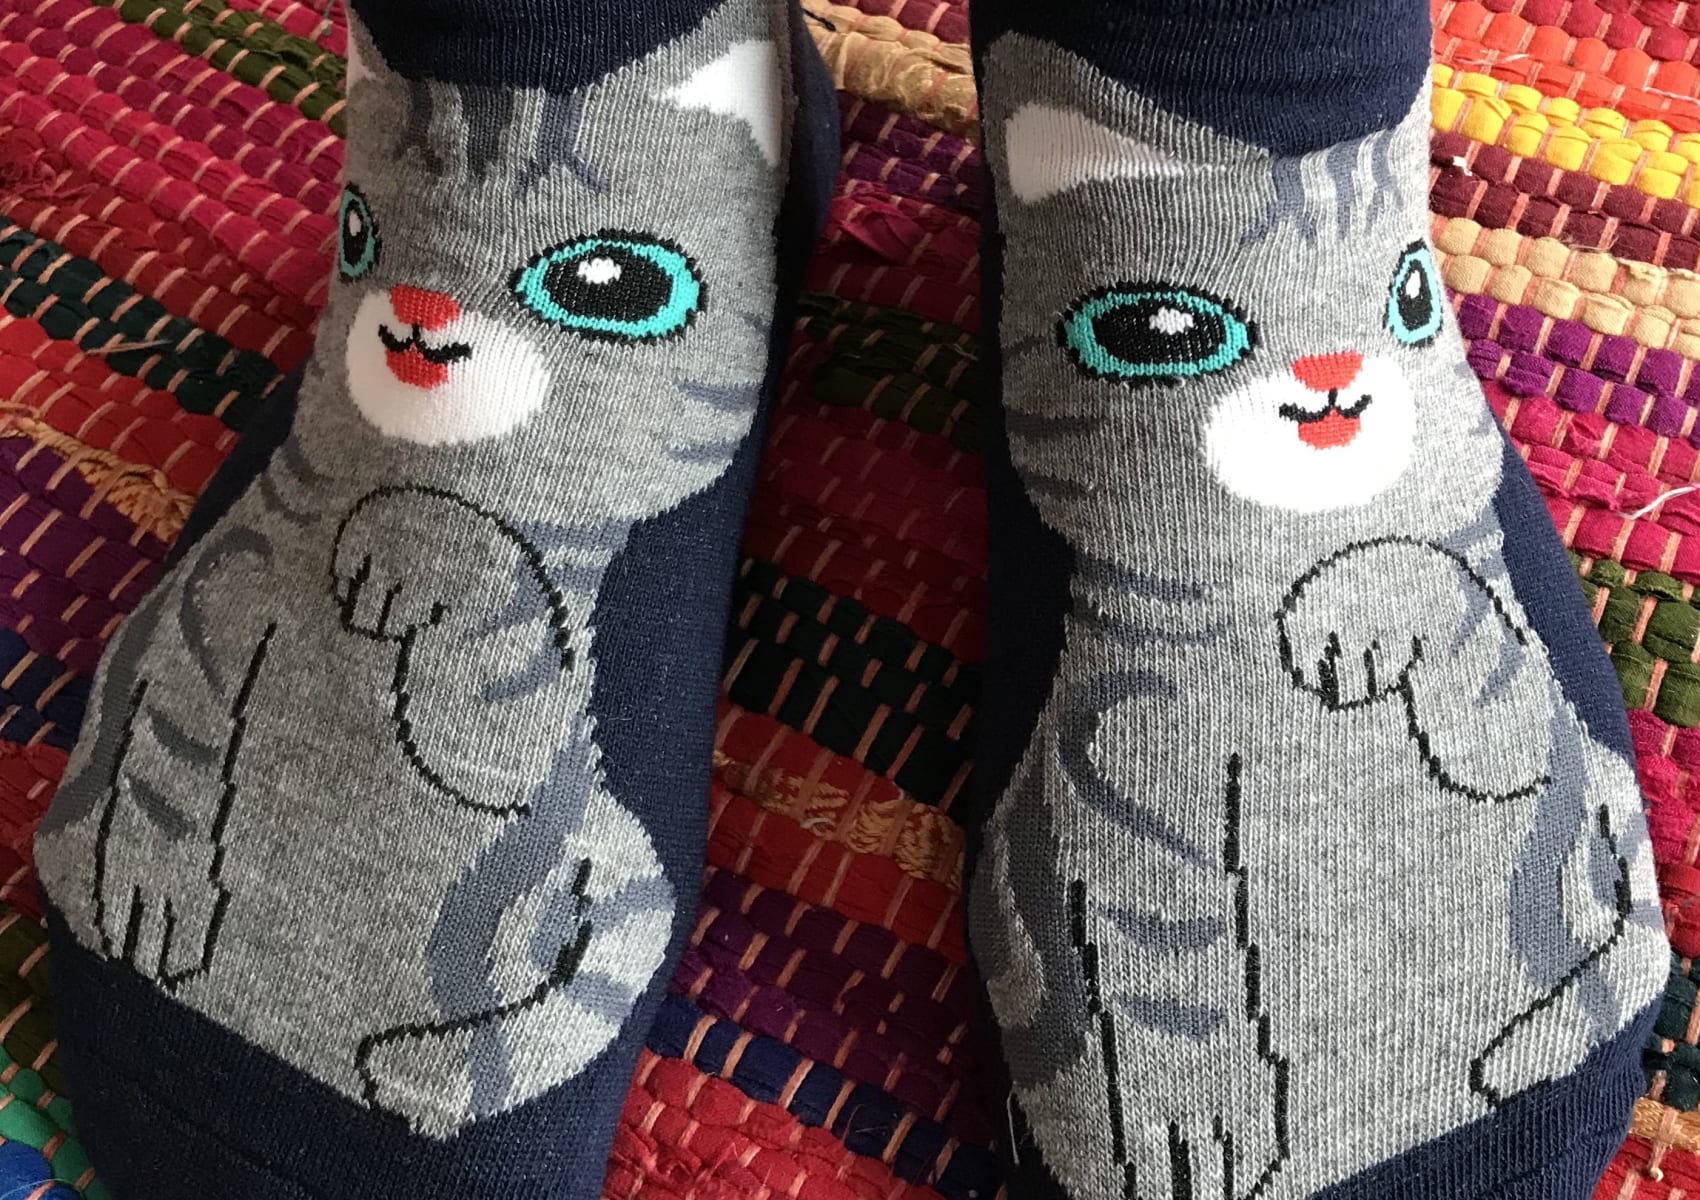 Ladies' dark blue ankle socks with grey American shorthair cat